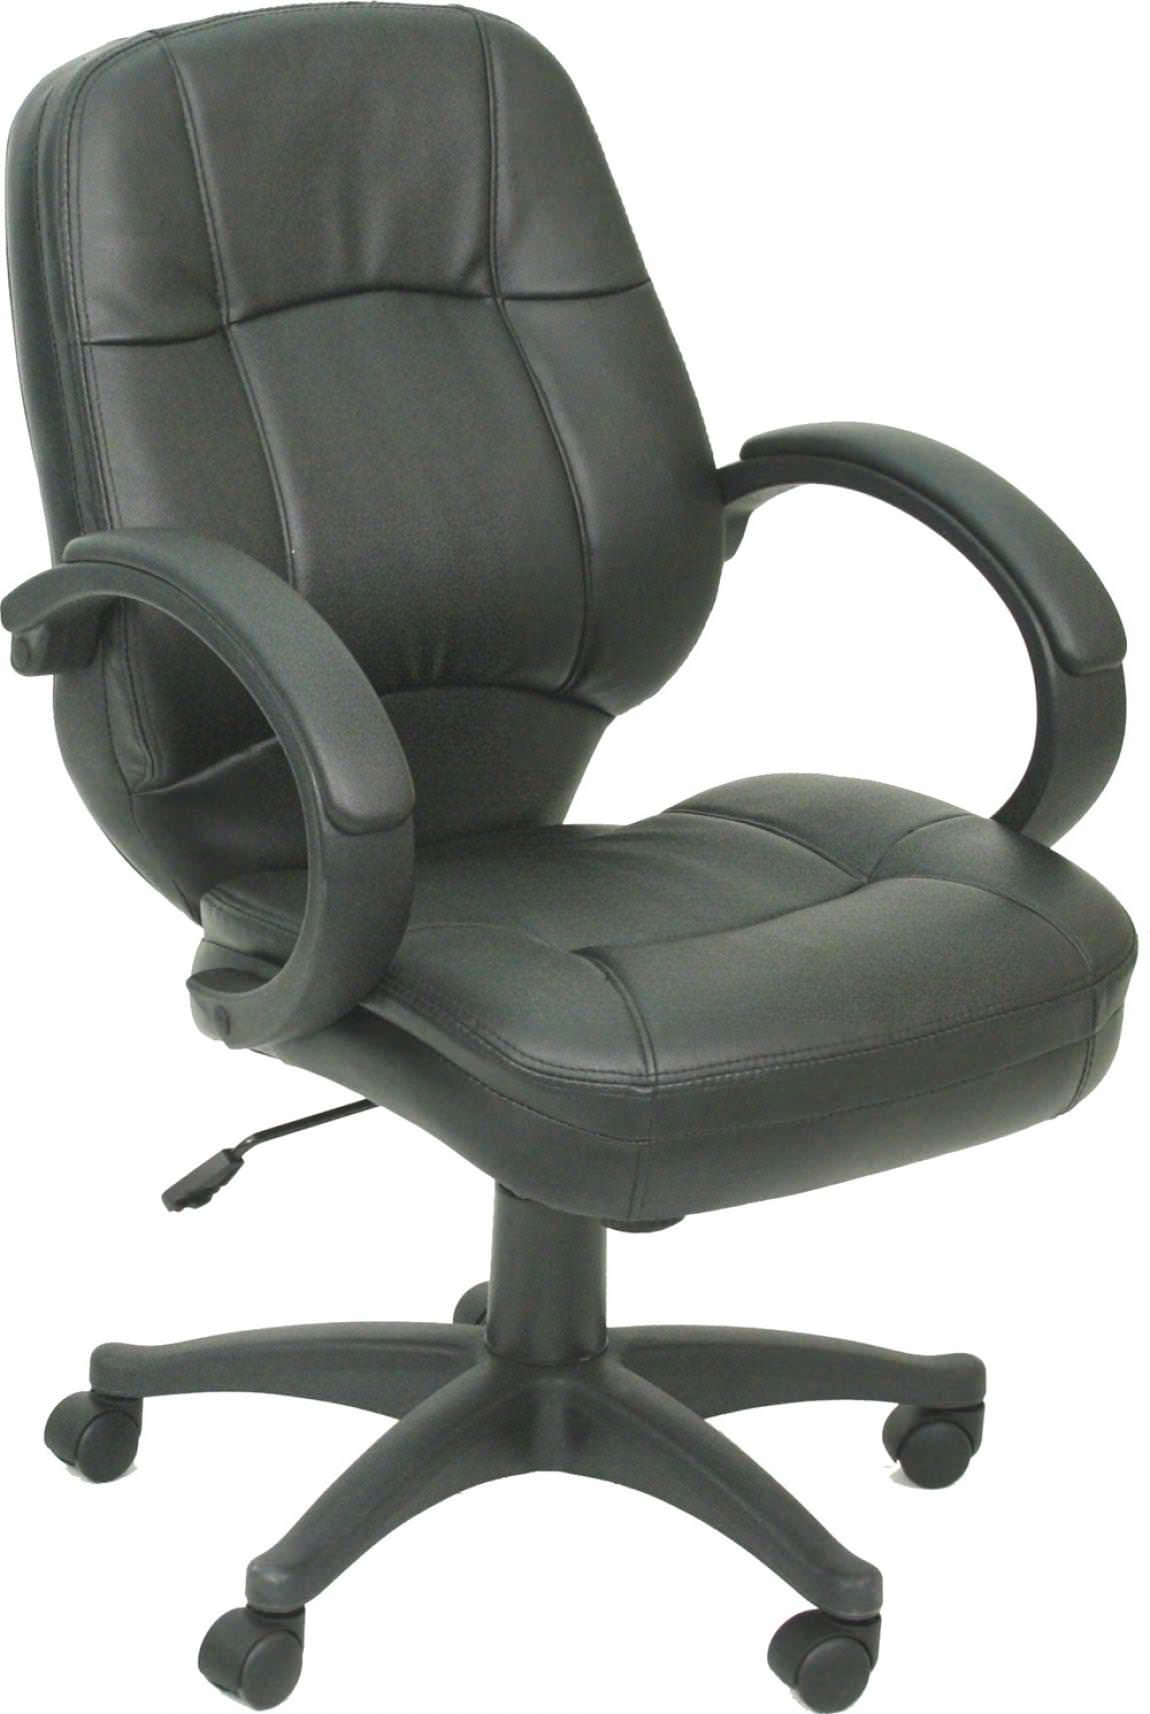 Black Tilt and Swivel Value Office Chair